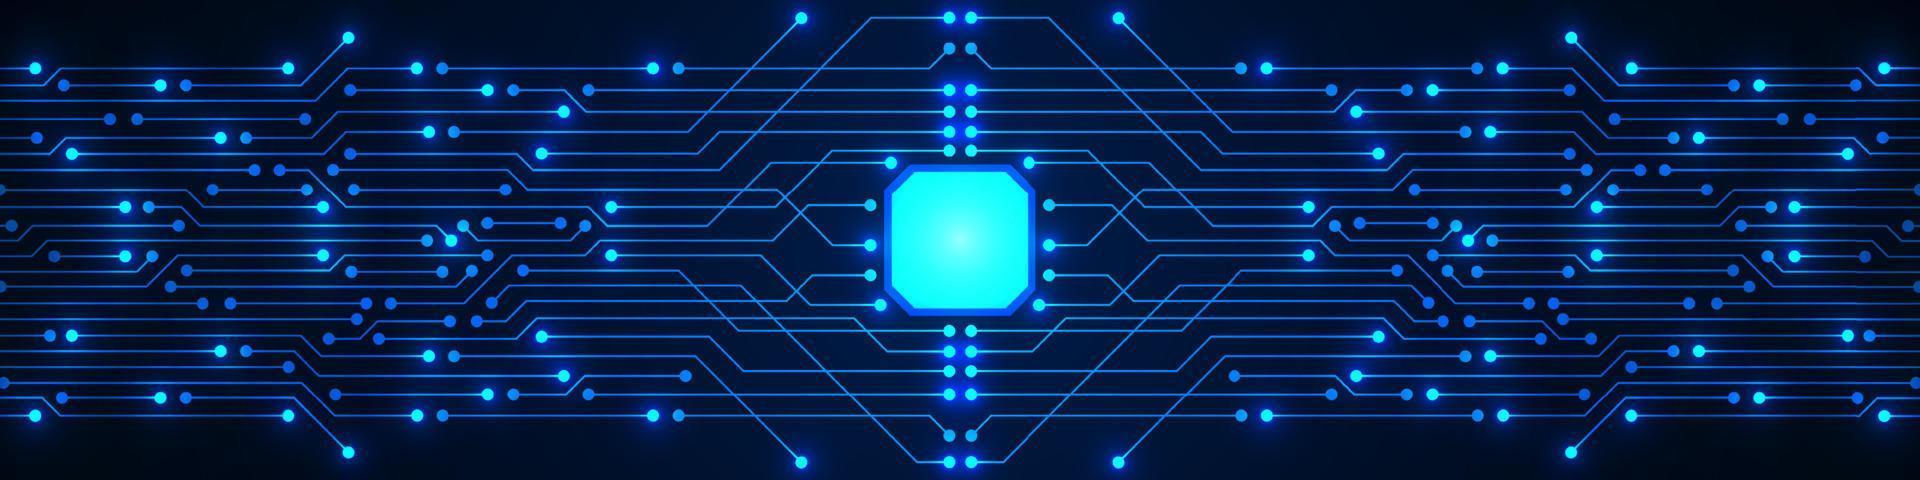 sfondo della tecnologia del microchip, modello di circuito digitale blu vettore